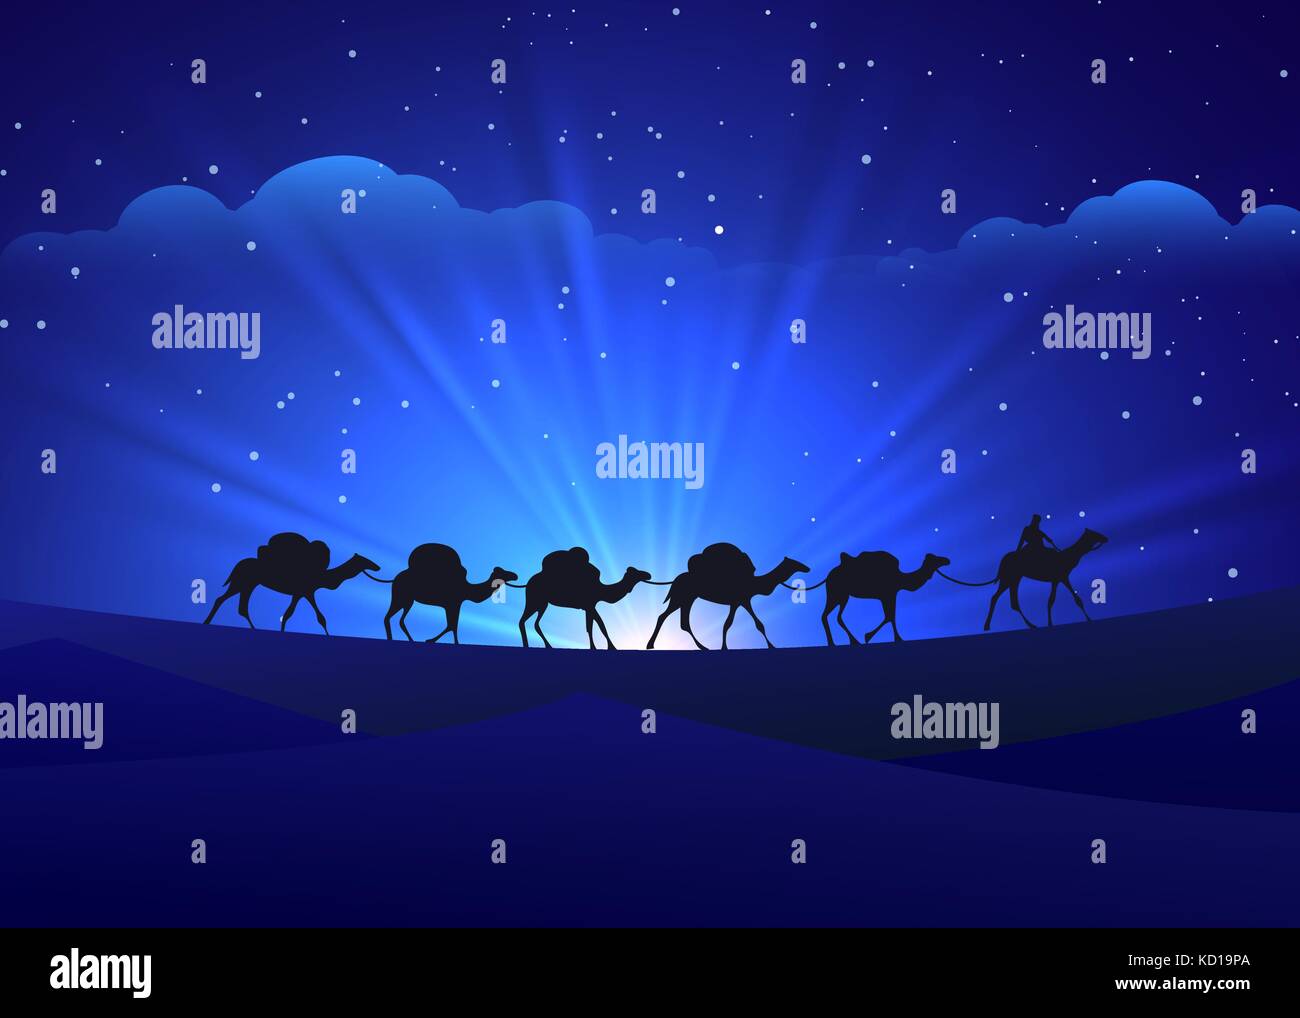 Walking camel caravan night background Stock Vector